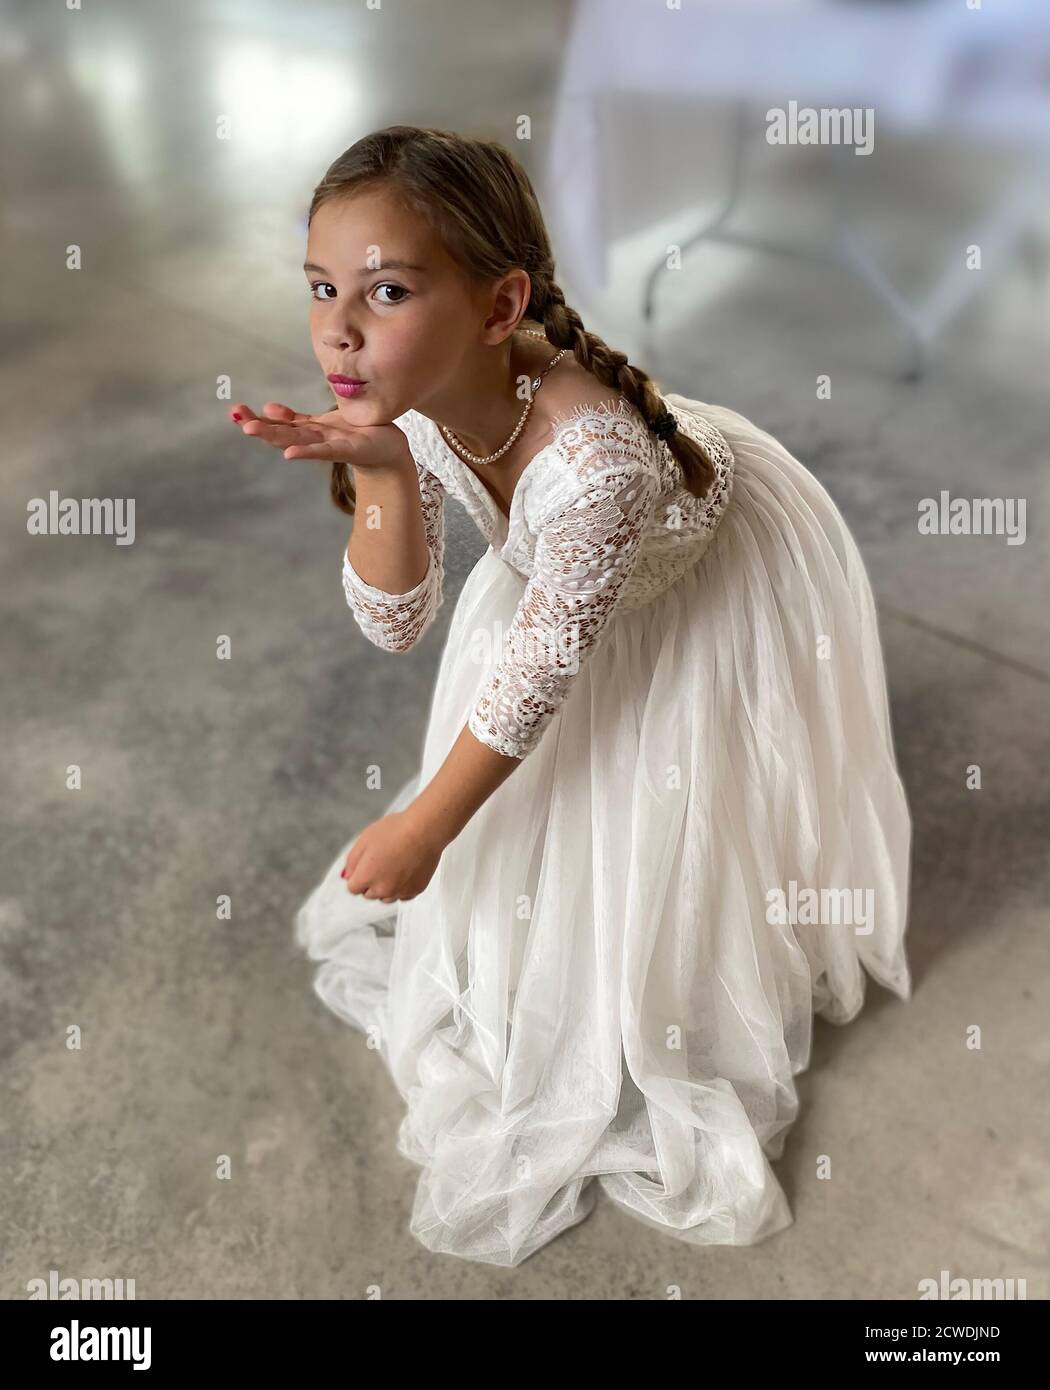 Ritratto di una ragazza di sette anni vestita una ragazza di fiori o un vestito di comunione Foto Stock